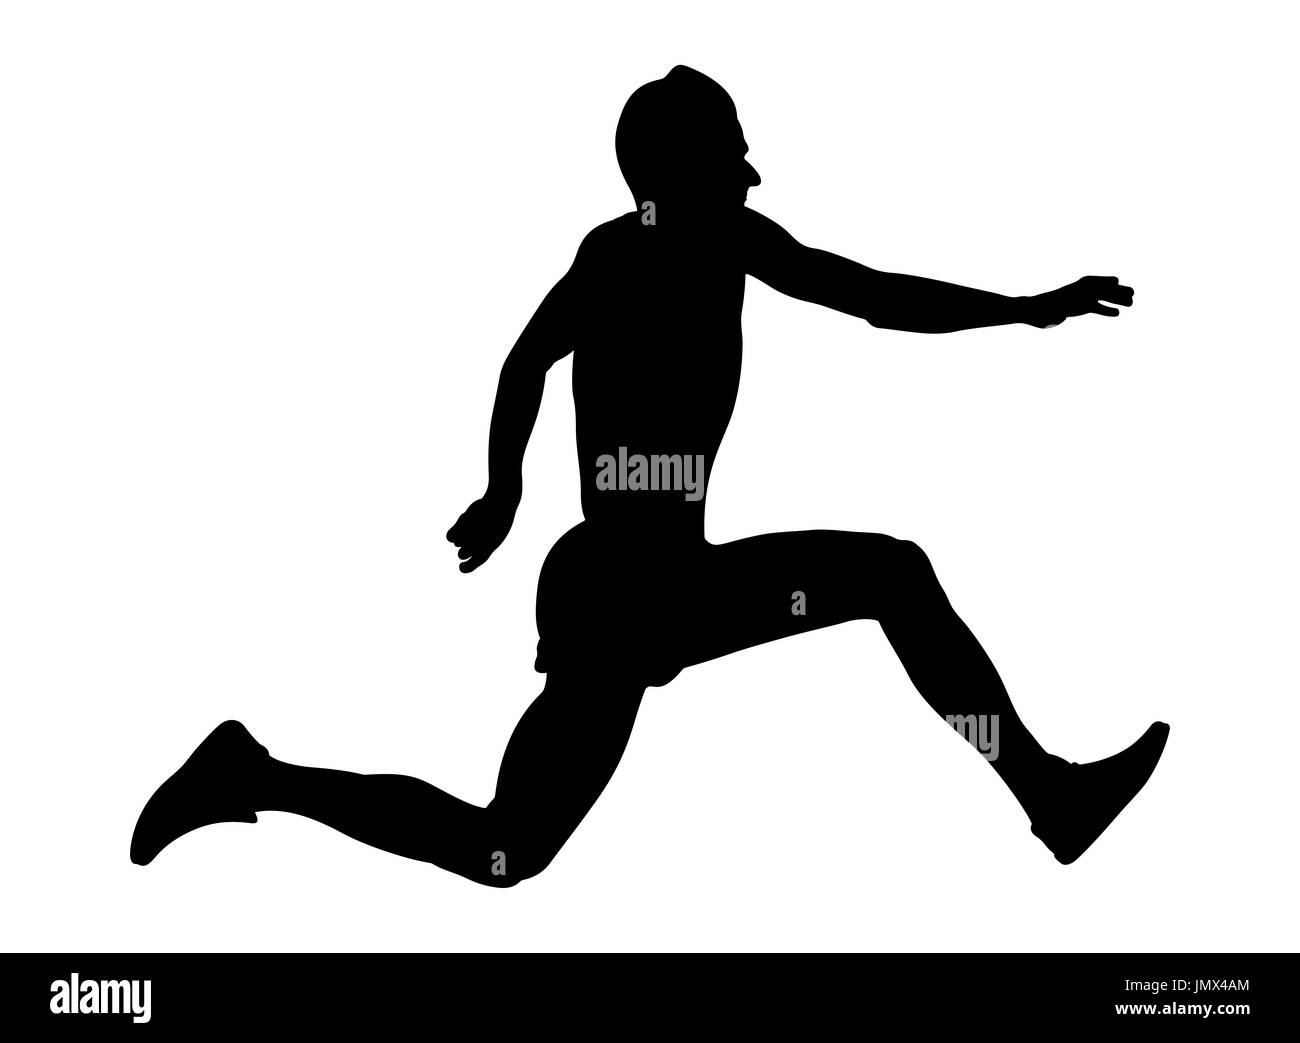 männlicher Athlet Jumper Dreisprung schwarze silhouette Stockfoto